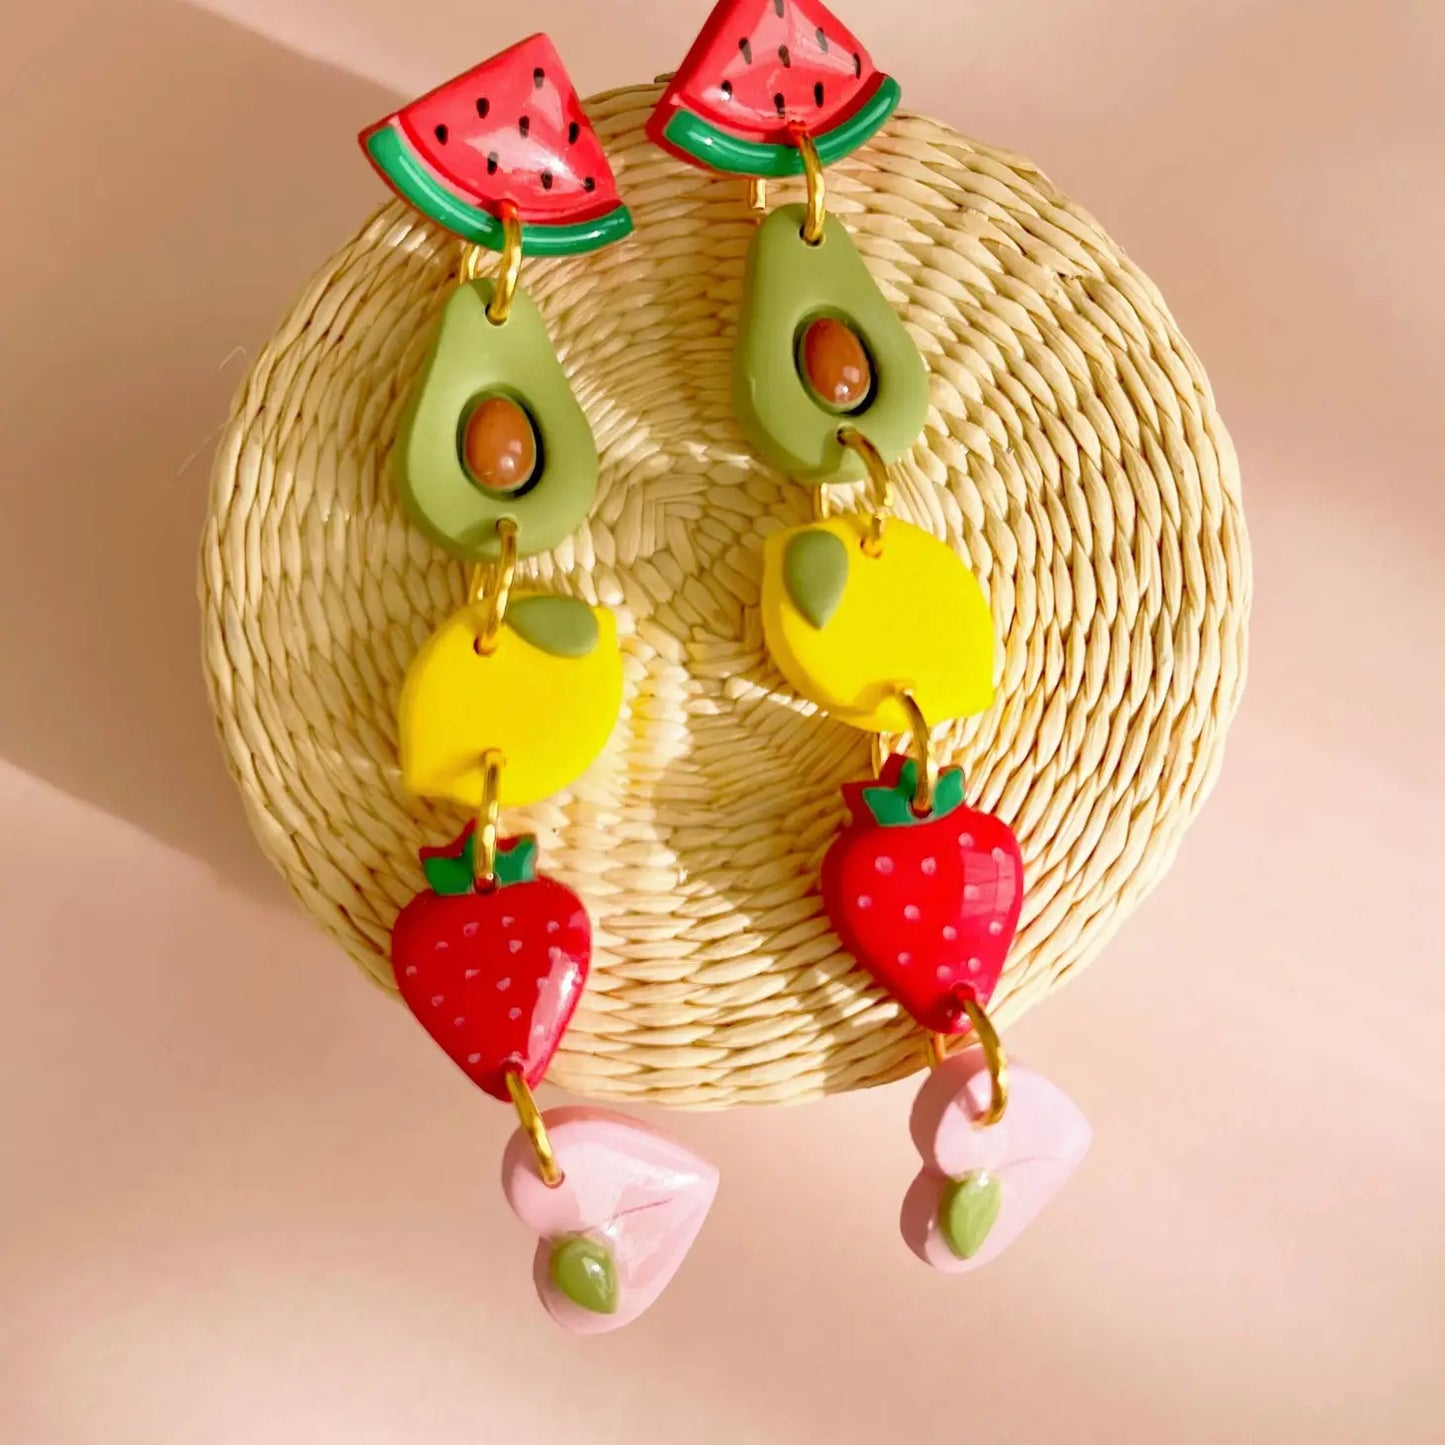 Fruit Salad Earrings